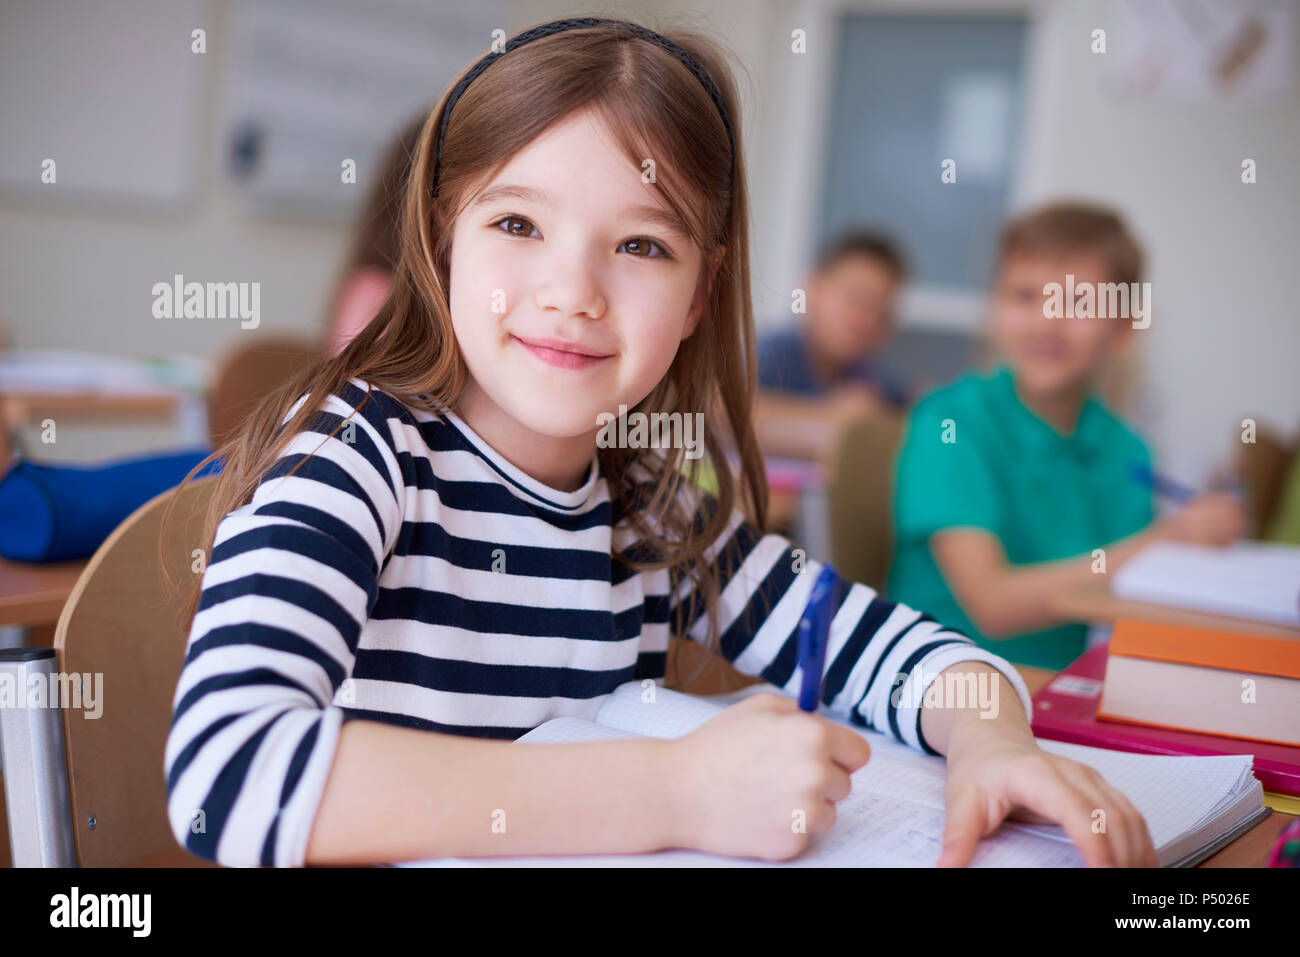 Portrait of smiling schoolgirl écrit dans un livre d'exercices en classe Banque D'Images